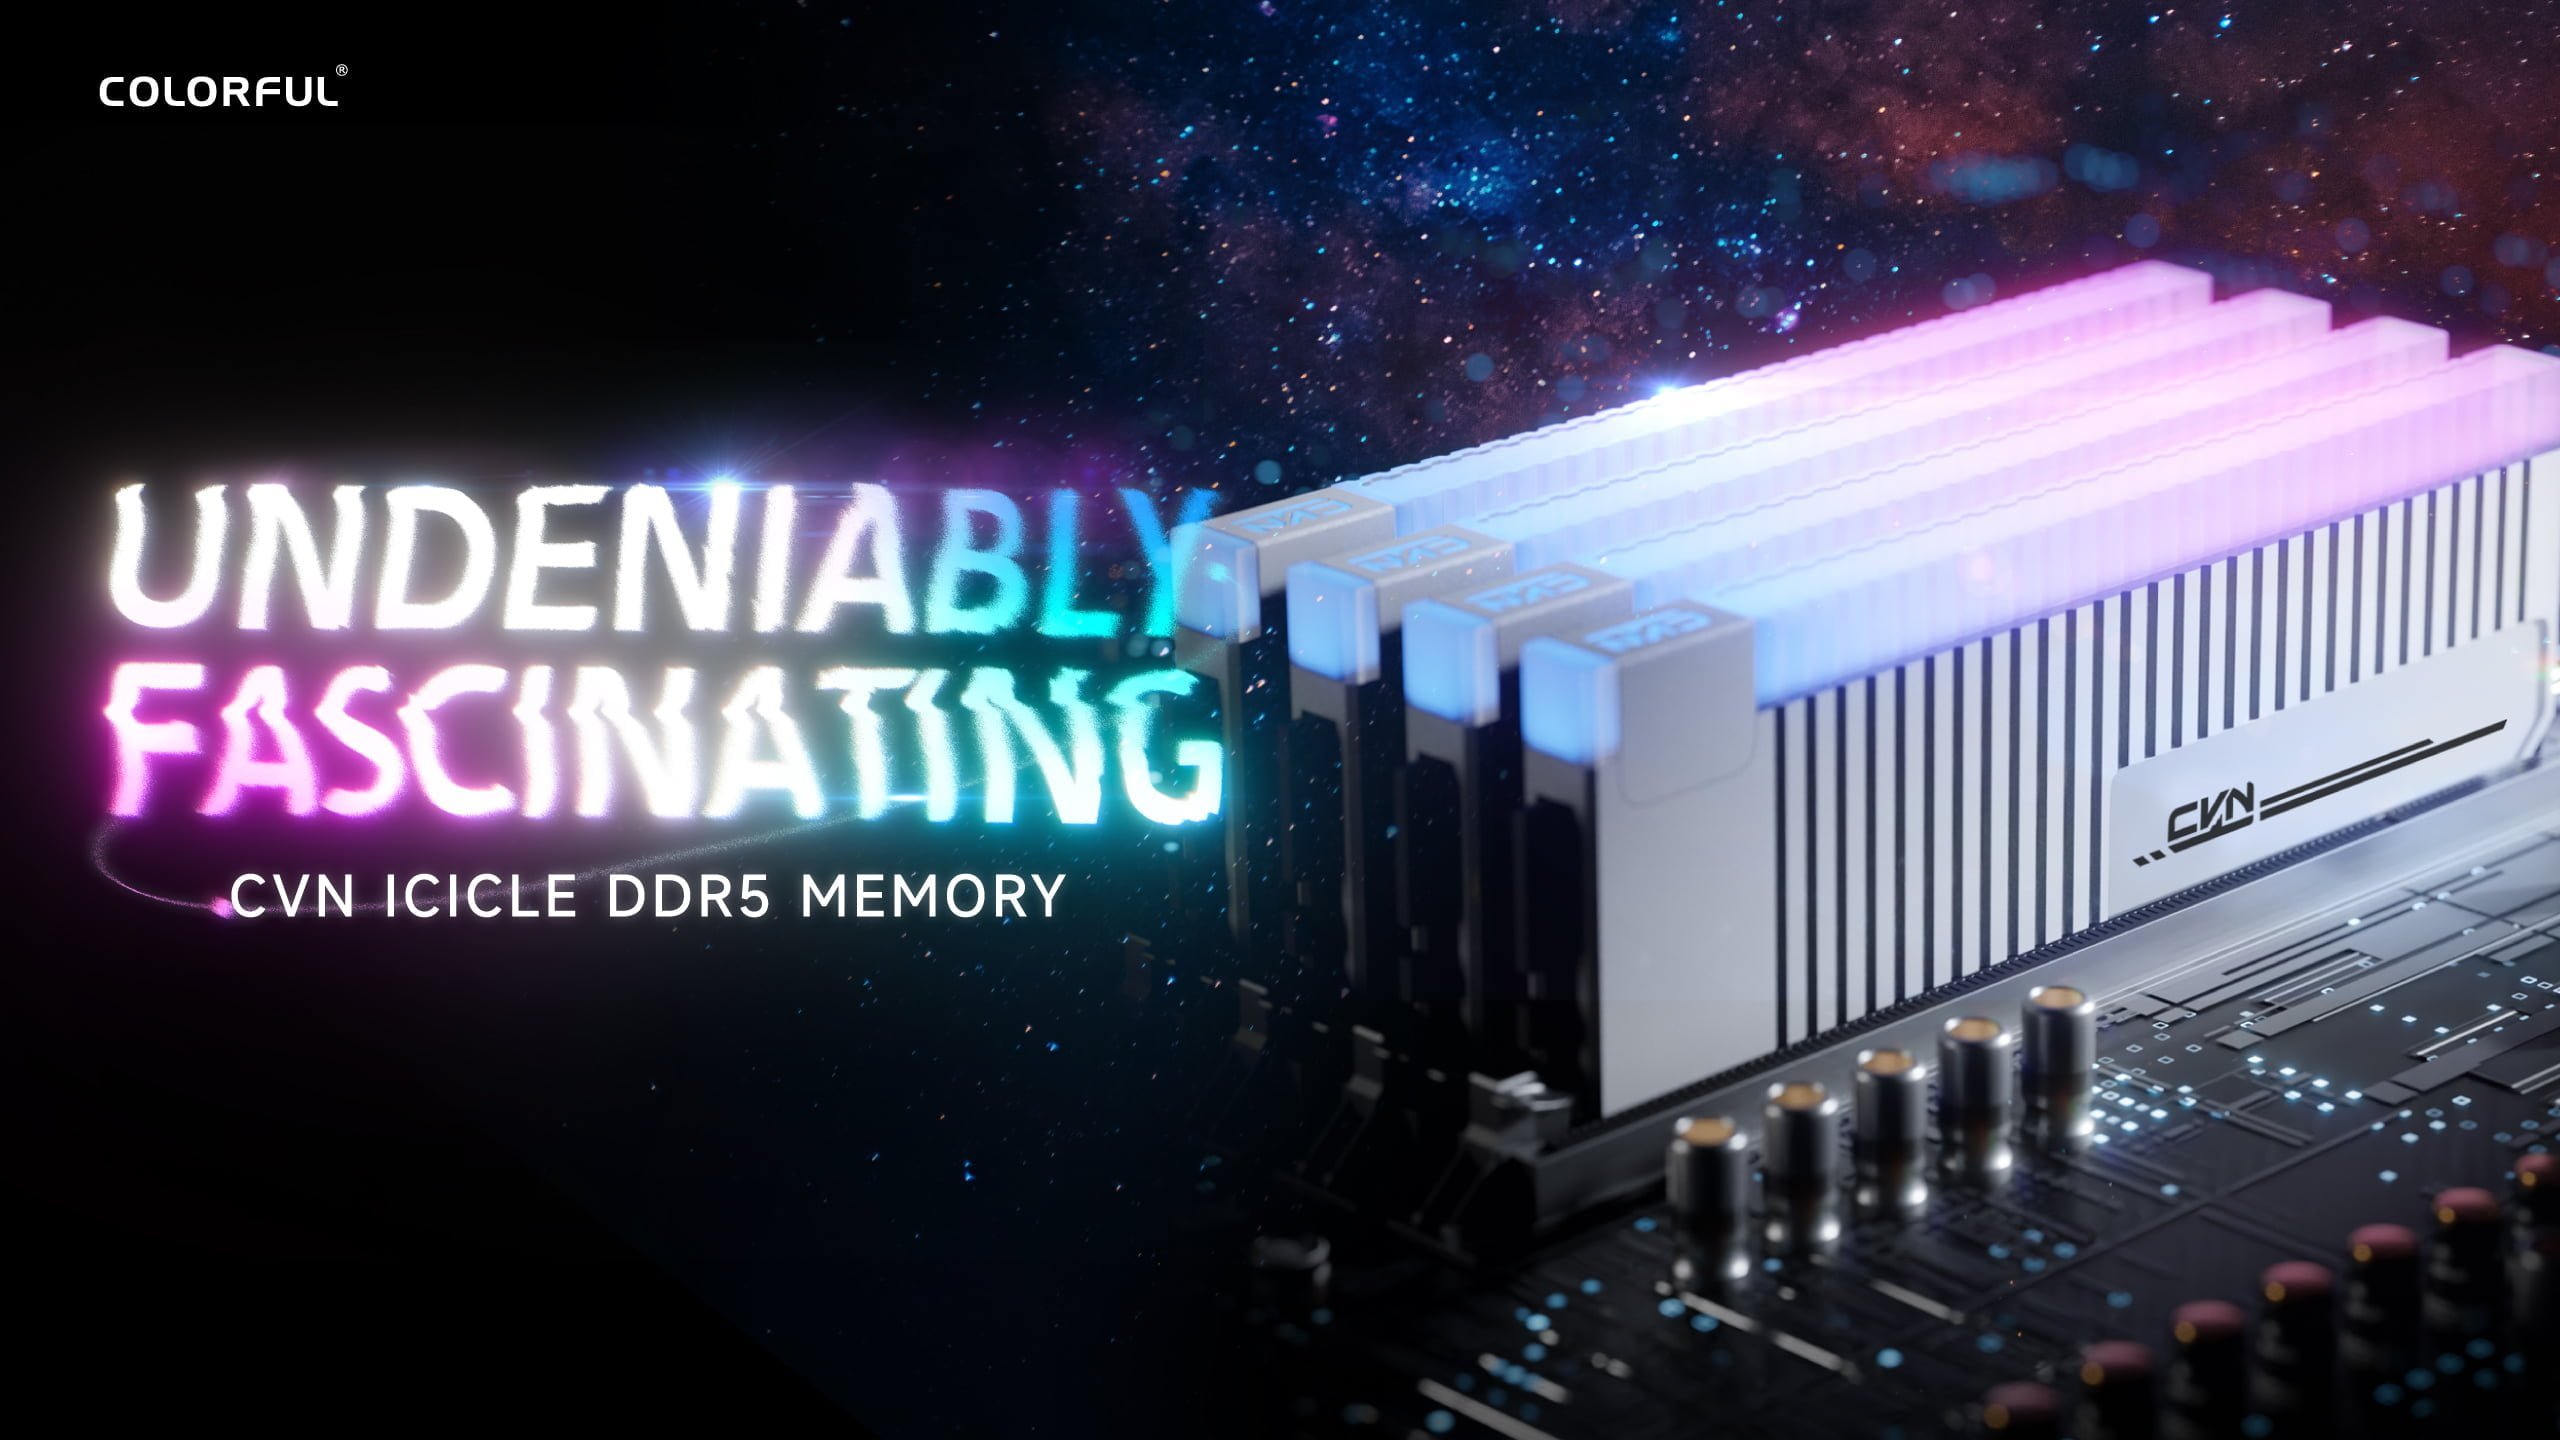 [PR] Colorful ra mắt bộ nhớ CVN ICICLE DDR5 dành cho người dùng ép xung - Image 1